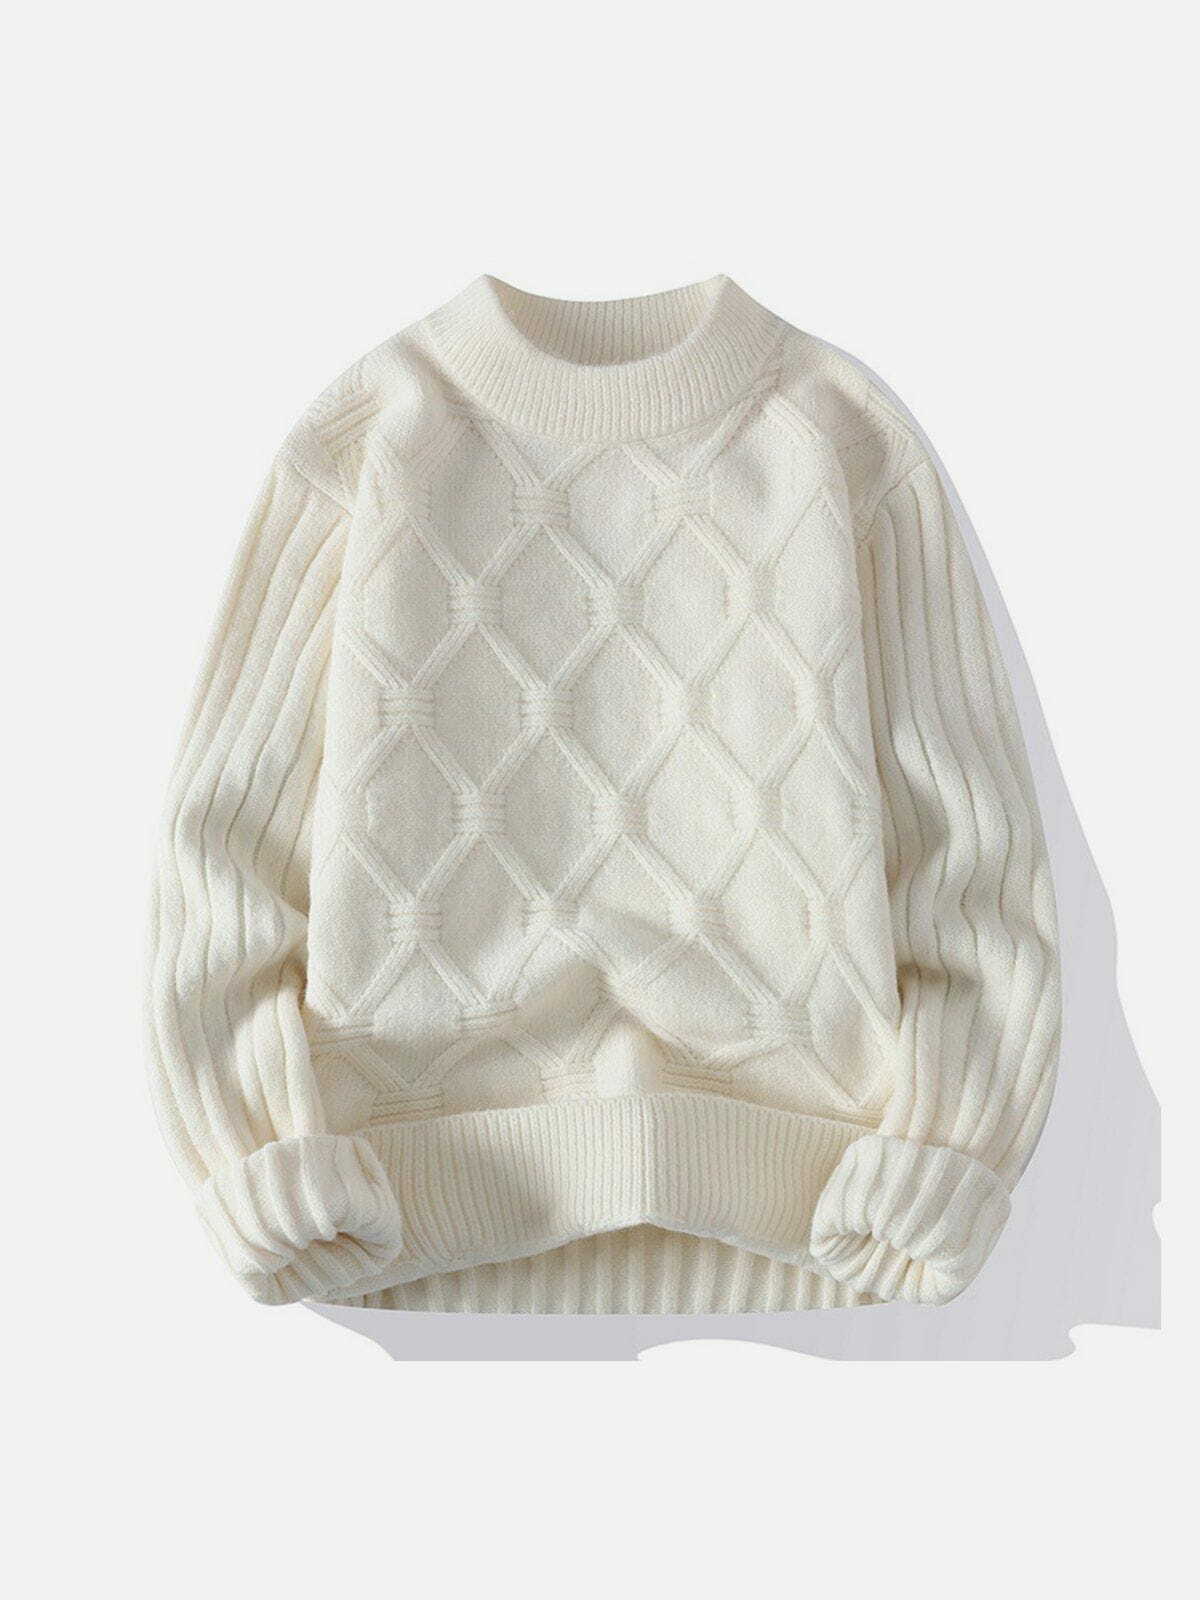 net jacquard sweater sleek & edgy streetwear 5541